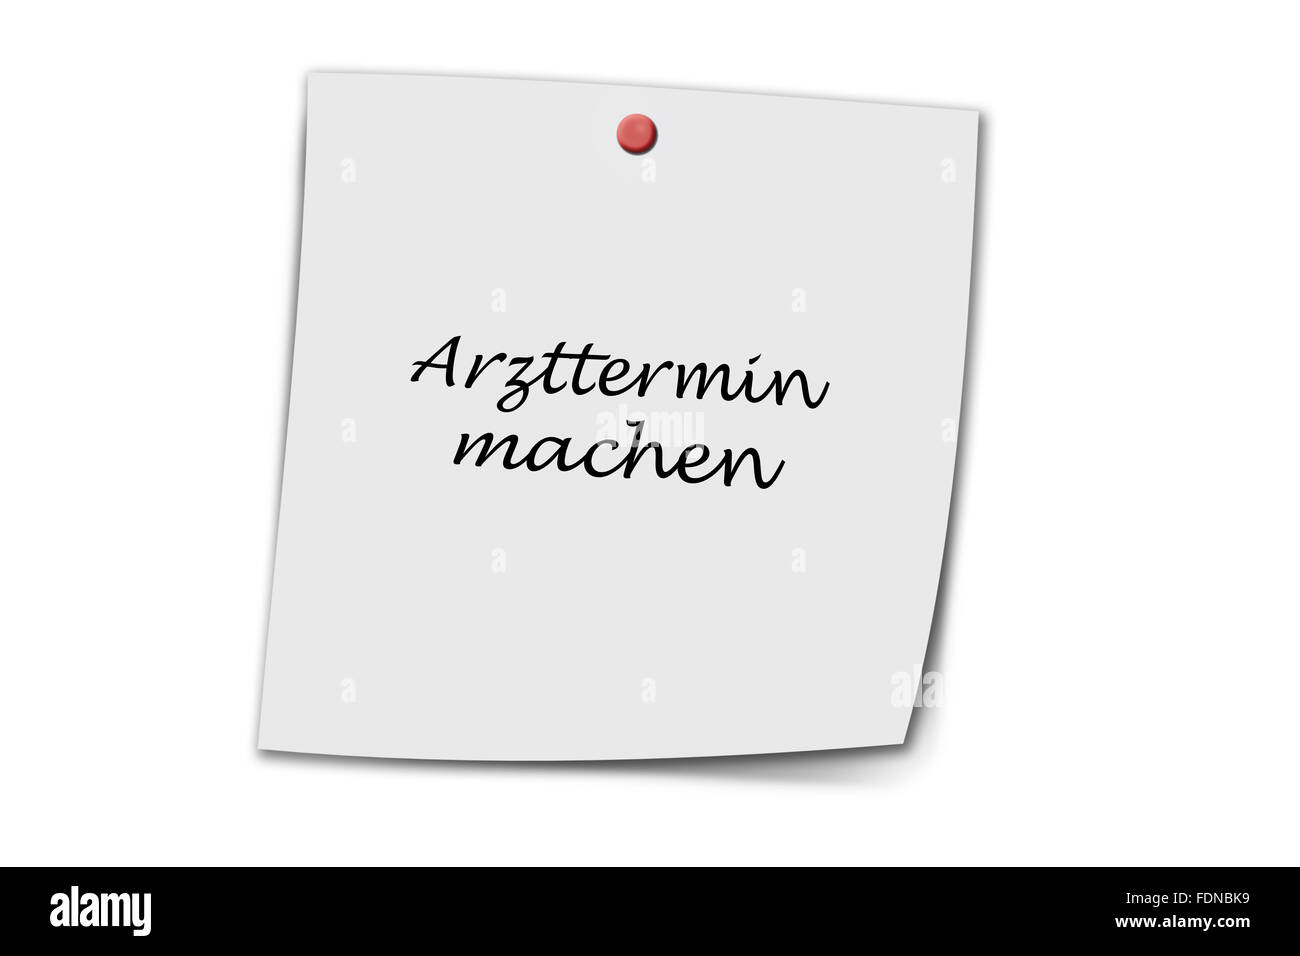 Arzttermin machen (marque allemande rendez-vous chez le médecin) écrit sur une note isolé sur fond blanc Banque D'Images